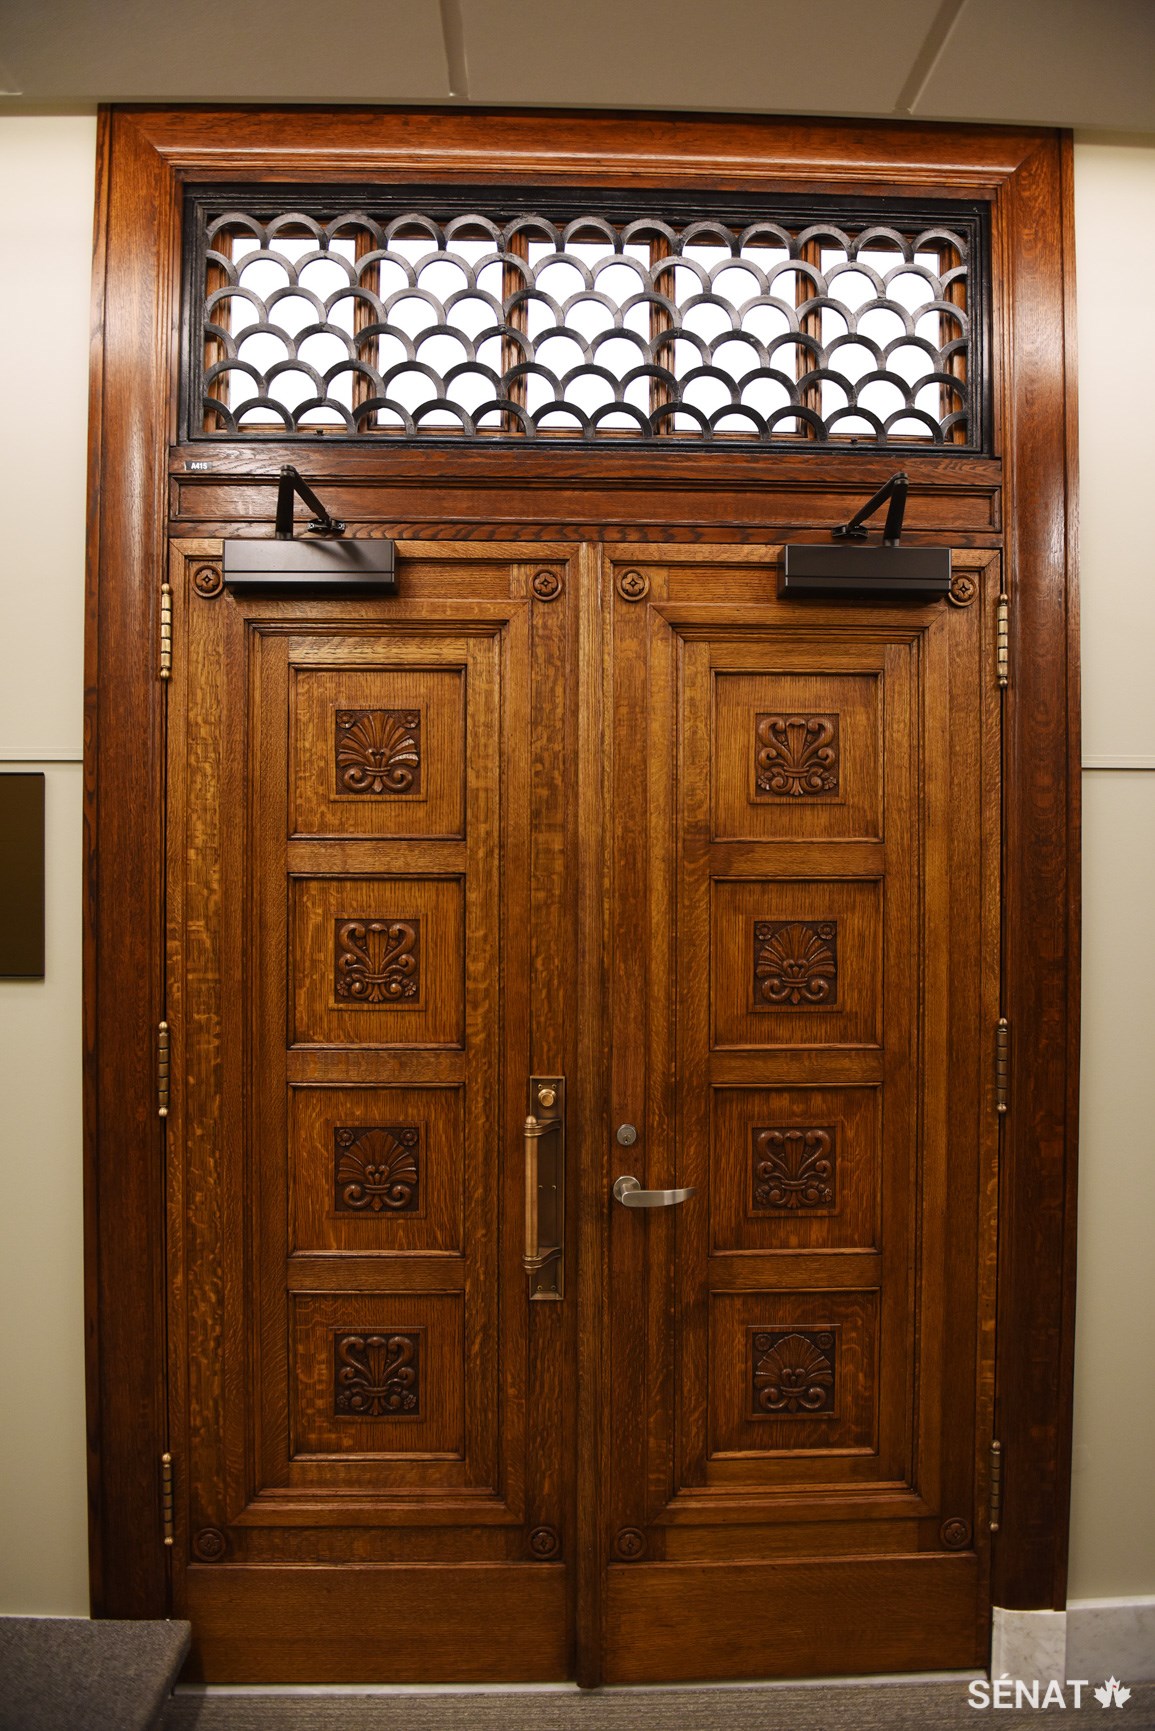 La récupération des matériaux originaux – comme ceux que l’on retrouve dans cette porte d’entrée et dans les plaques de marbre qui revêtent les corridors de l’édifice du Sénat du Canada – permet de préserver le patrimoine culturel de l’édifice.